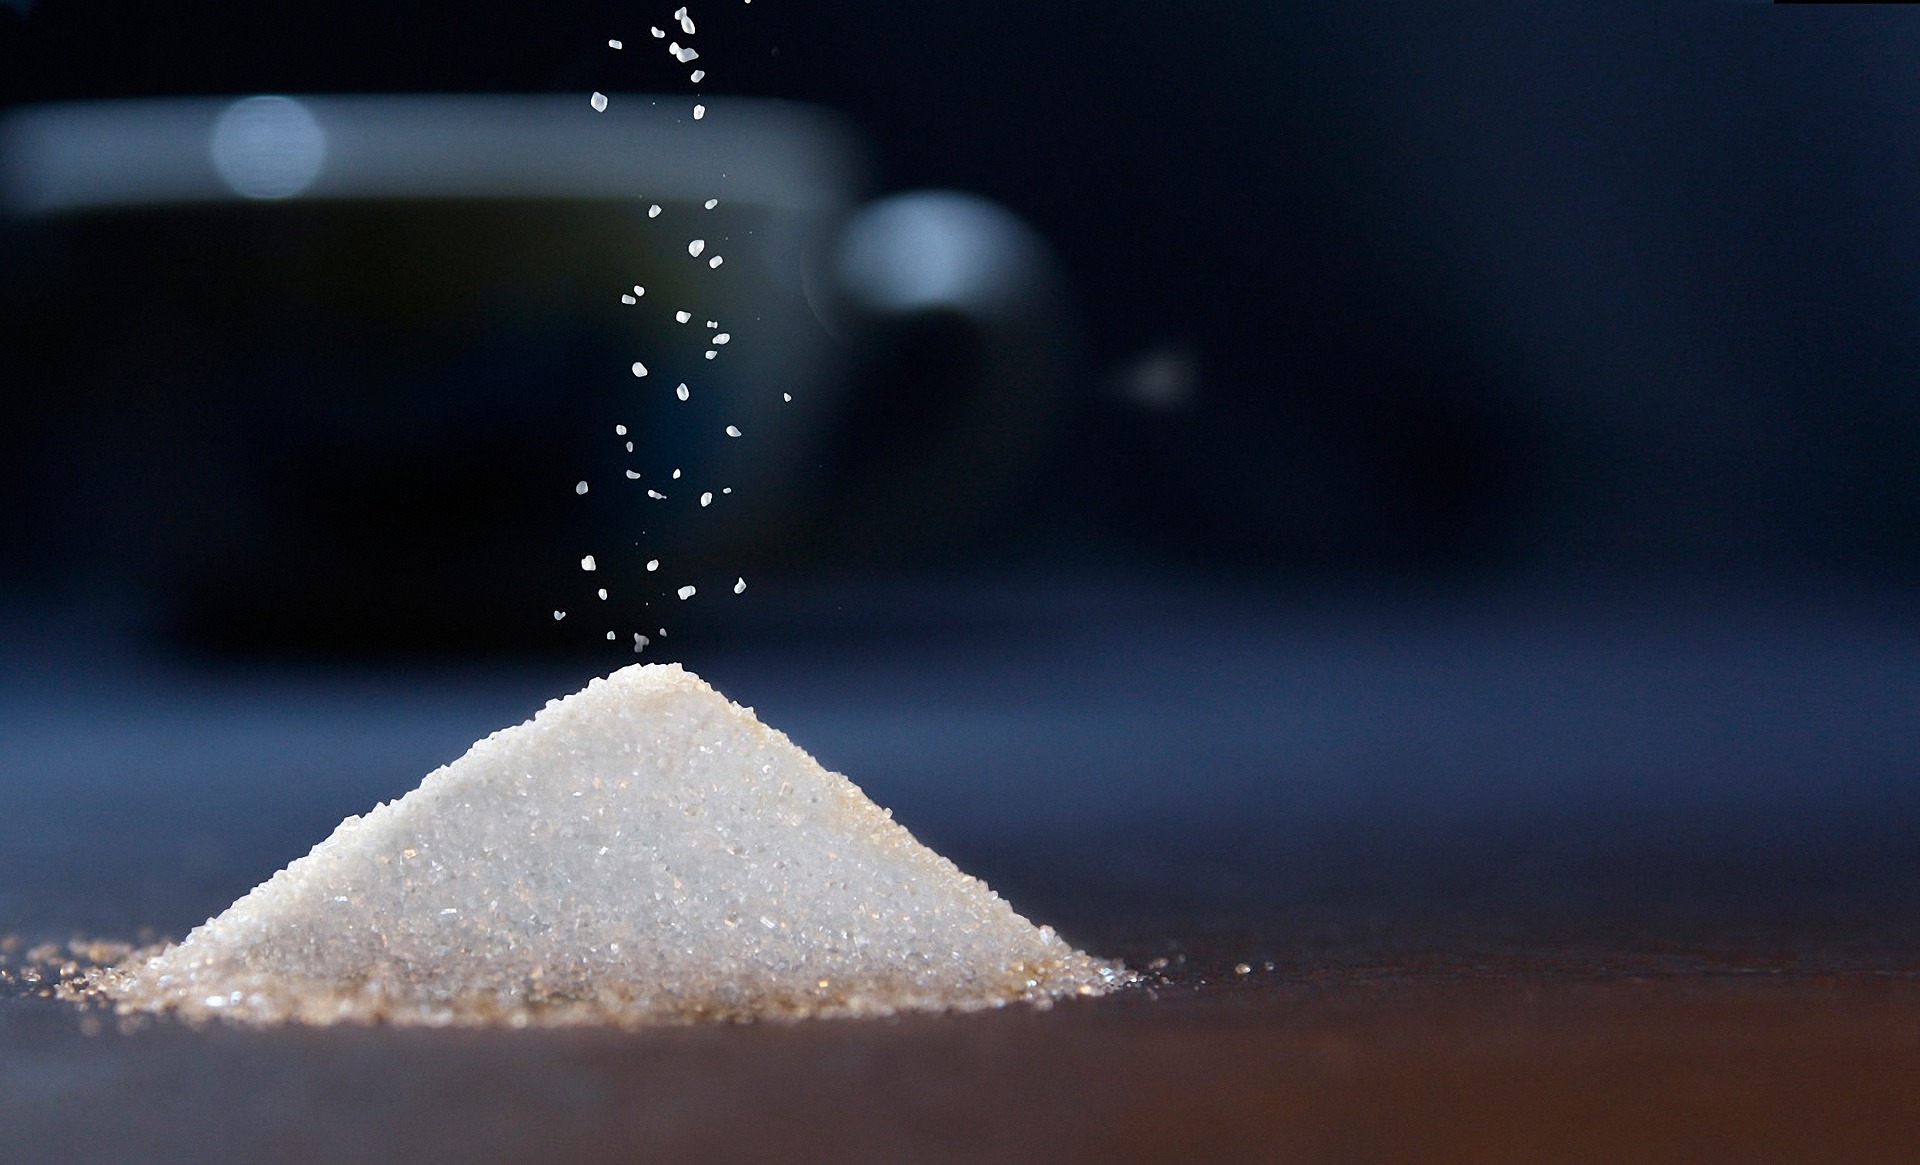 Την ζάχαρη πωλούσαν τα φαρμακεία ως είδος πολυτελείας. Η προέλευσή της και τα πρώτα εργοστάσια ζάχαρης στην Ελλάδα